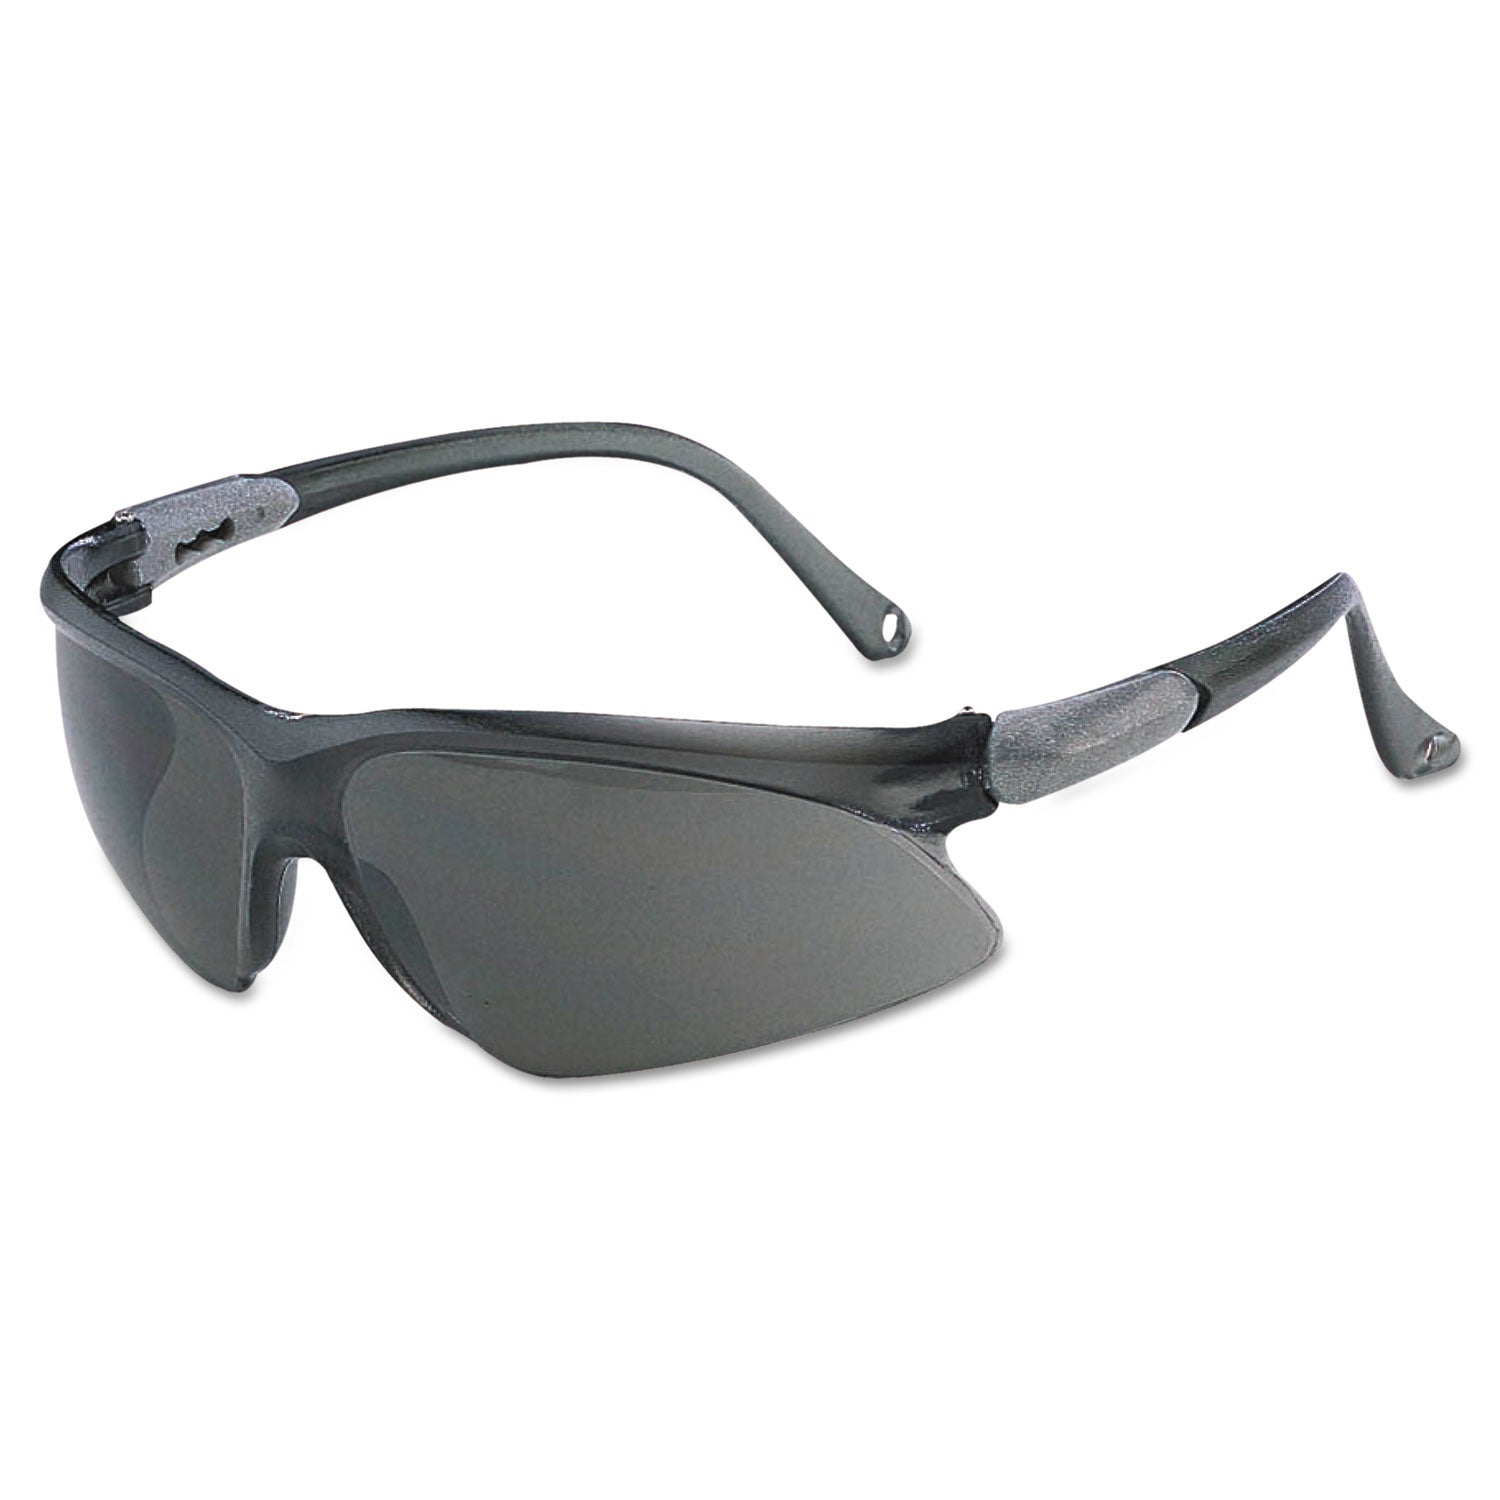 v20-visio-safety-glasses-black-frame-black-indoor-outdoor-lens_kcc14476 - 1